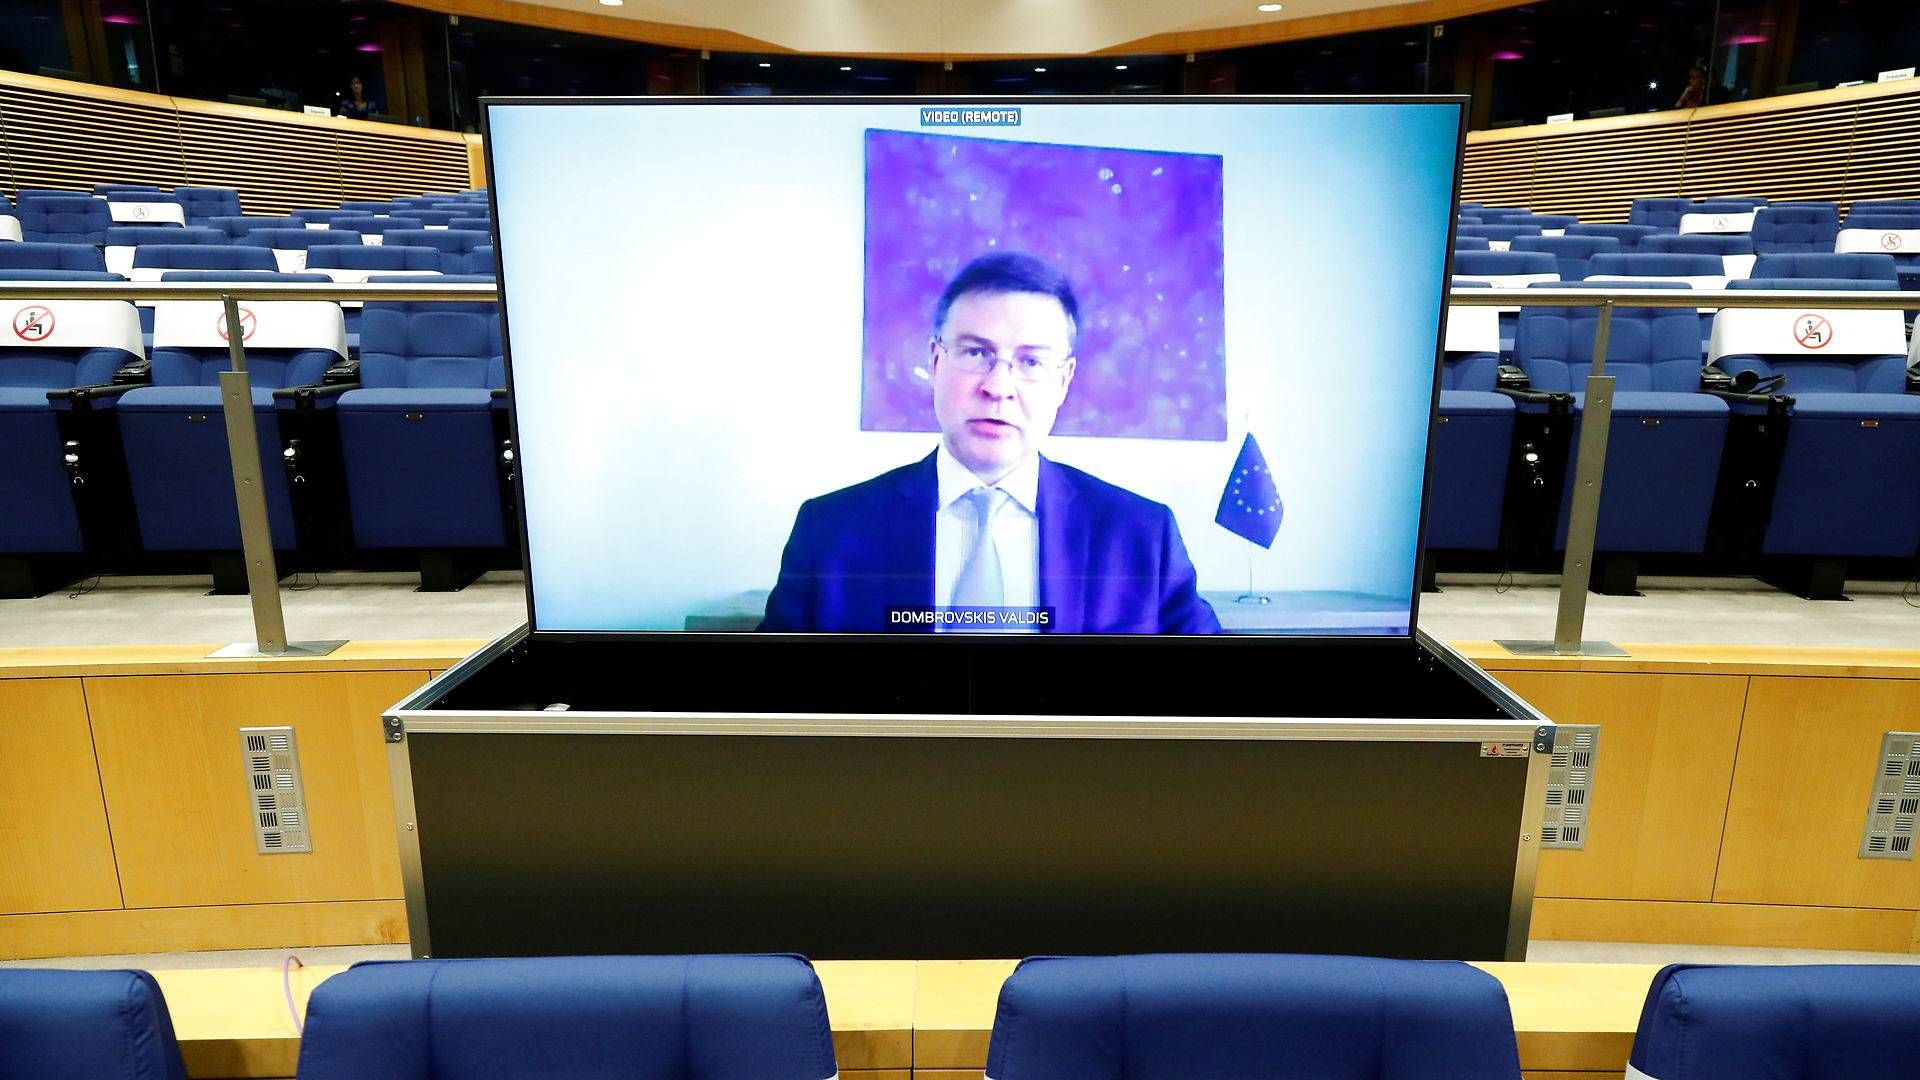 EU's næstformand Valdis Dombrovskis, da han sidste år i september præsenterede en handlingsplan for kapitalmarkedsunionen. Kommissionen får nu kritik for, a t den ekspertgruppe, der hjalp med handlingsplanen, ikke var uvildig nok. | Foto: Francois Lenoir/Reuters/Ritzau Scanpix